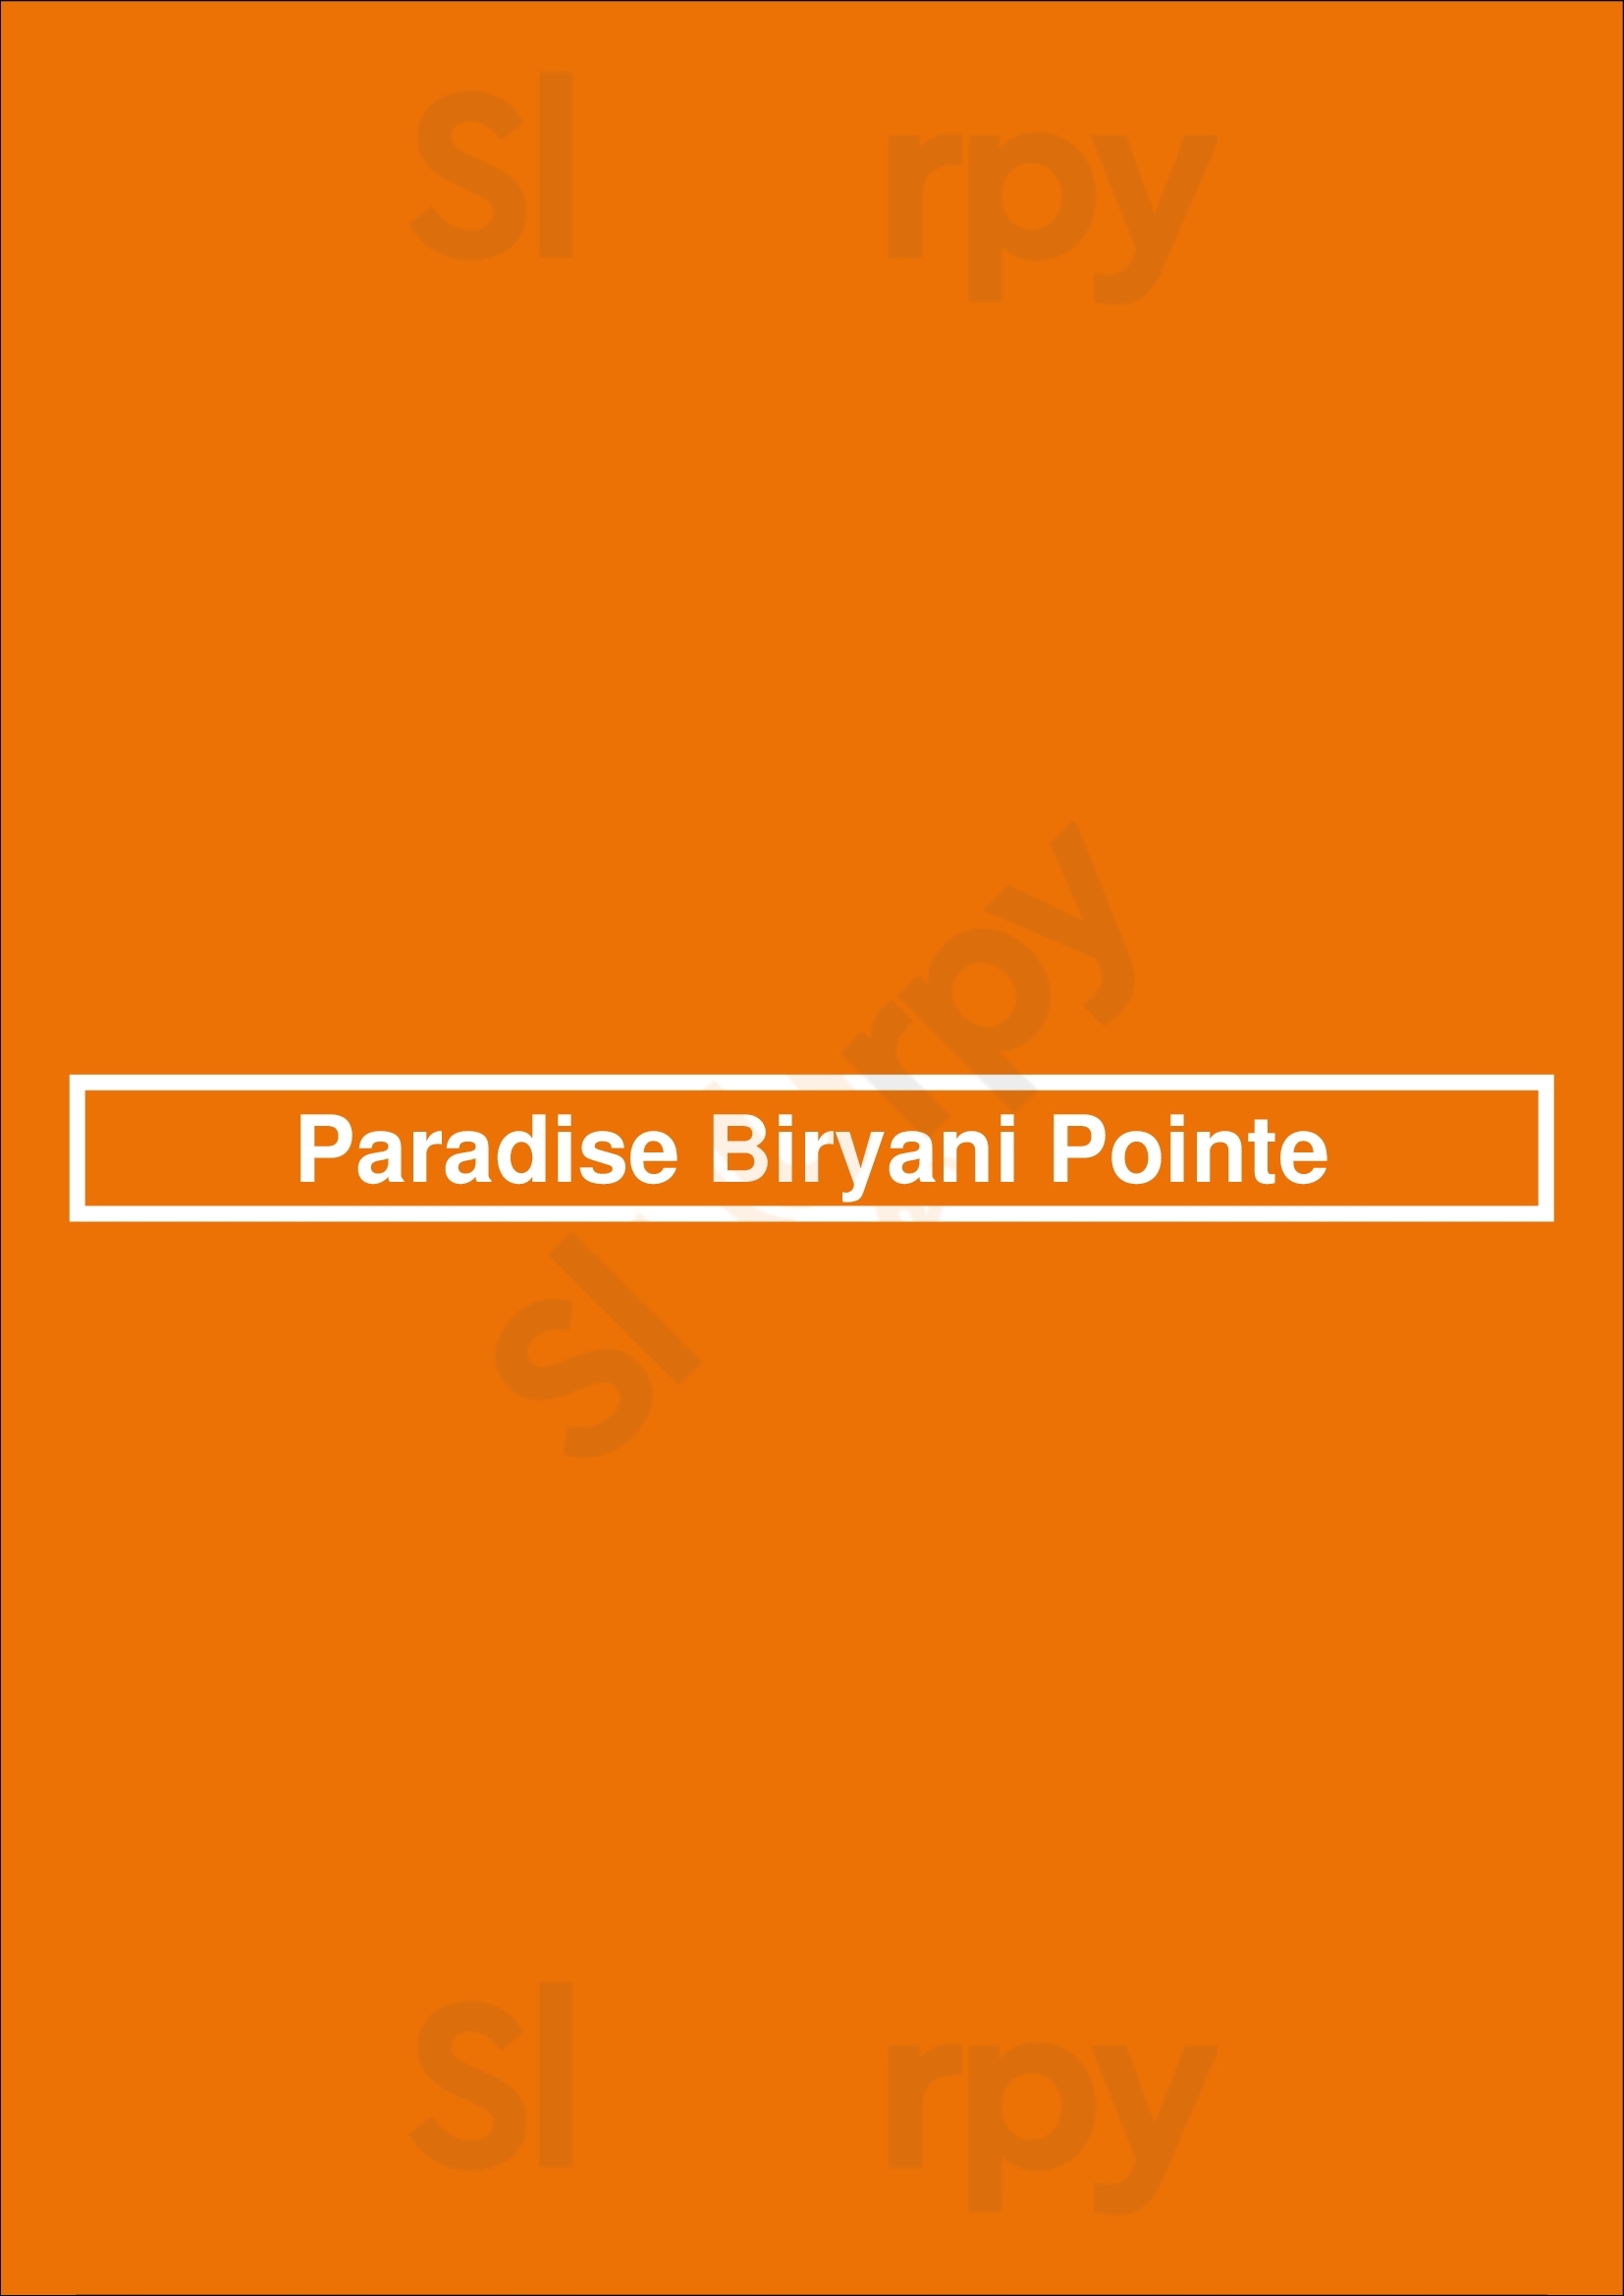 Paradise Biryani Pointe San Diego Menu - 1